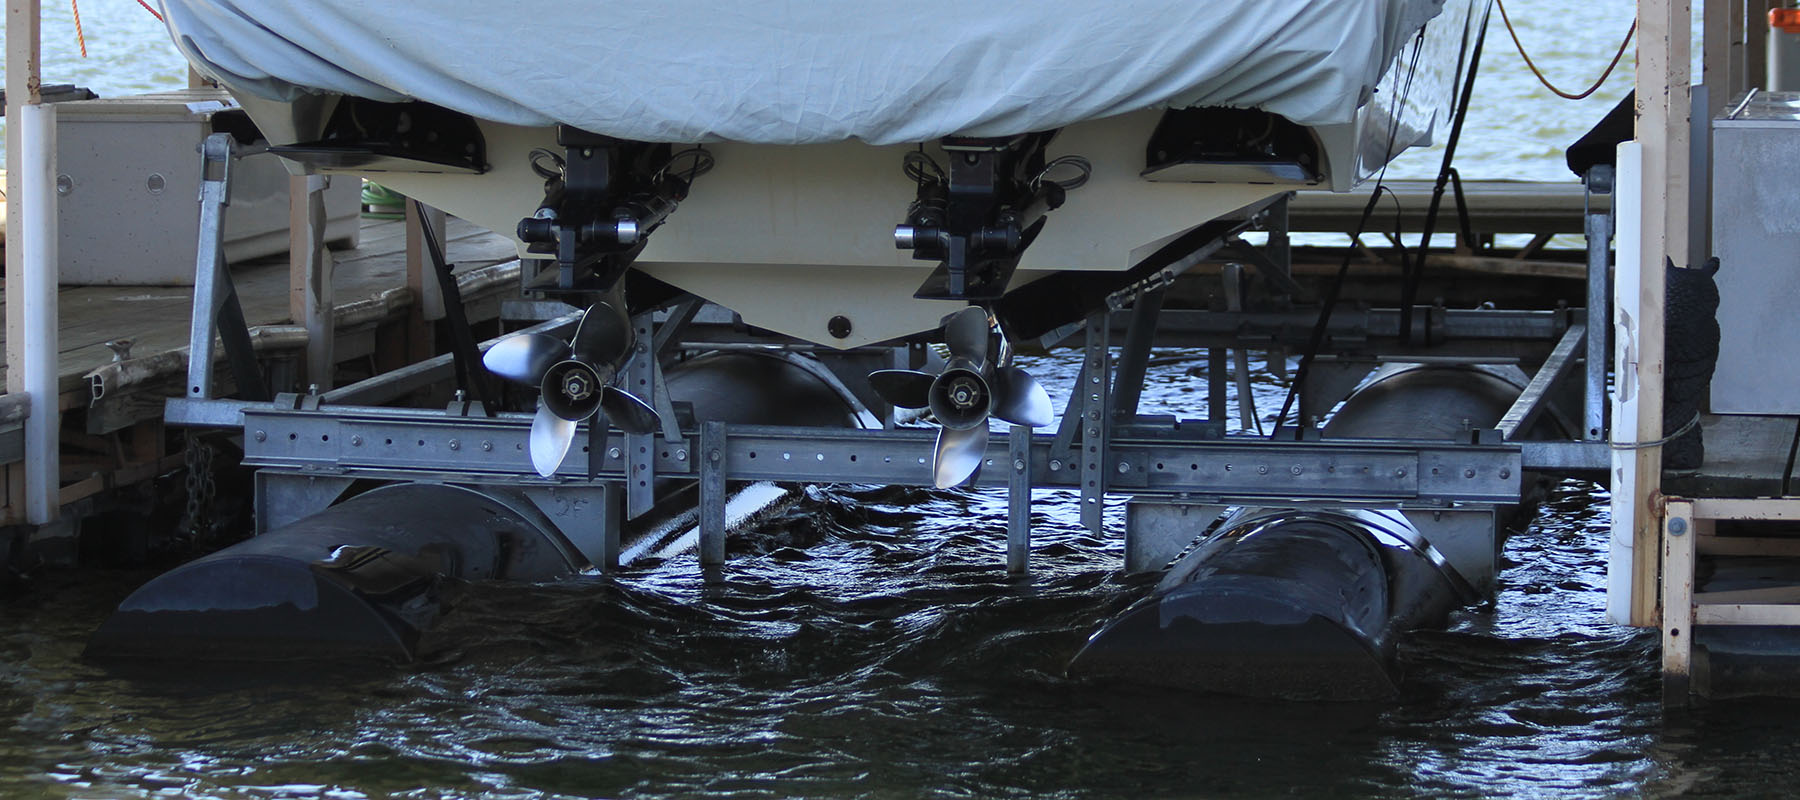 10,000 lb boat lift at the Lake of the Ozarks